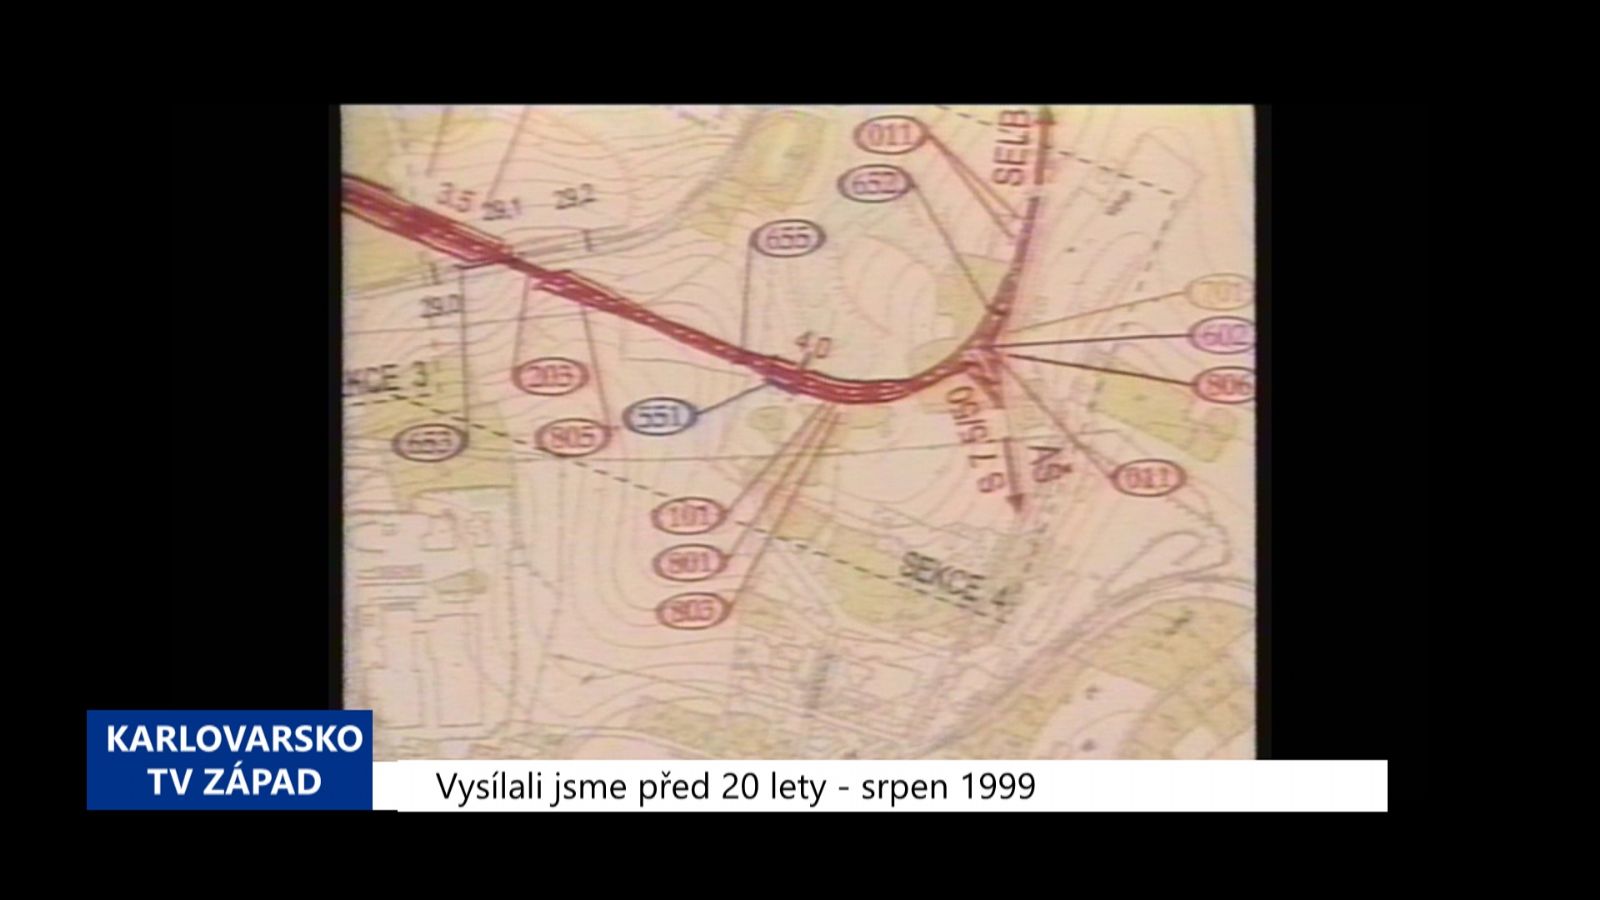 1999 – Aš: Přípravy výstavby obchvatu pokračují (TV Západ)